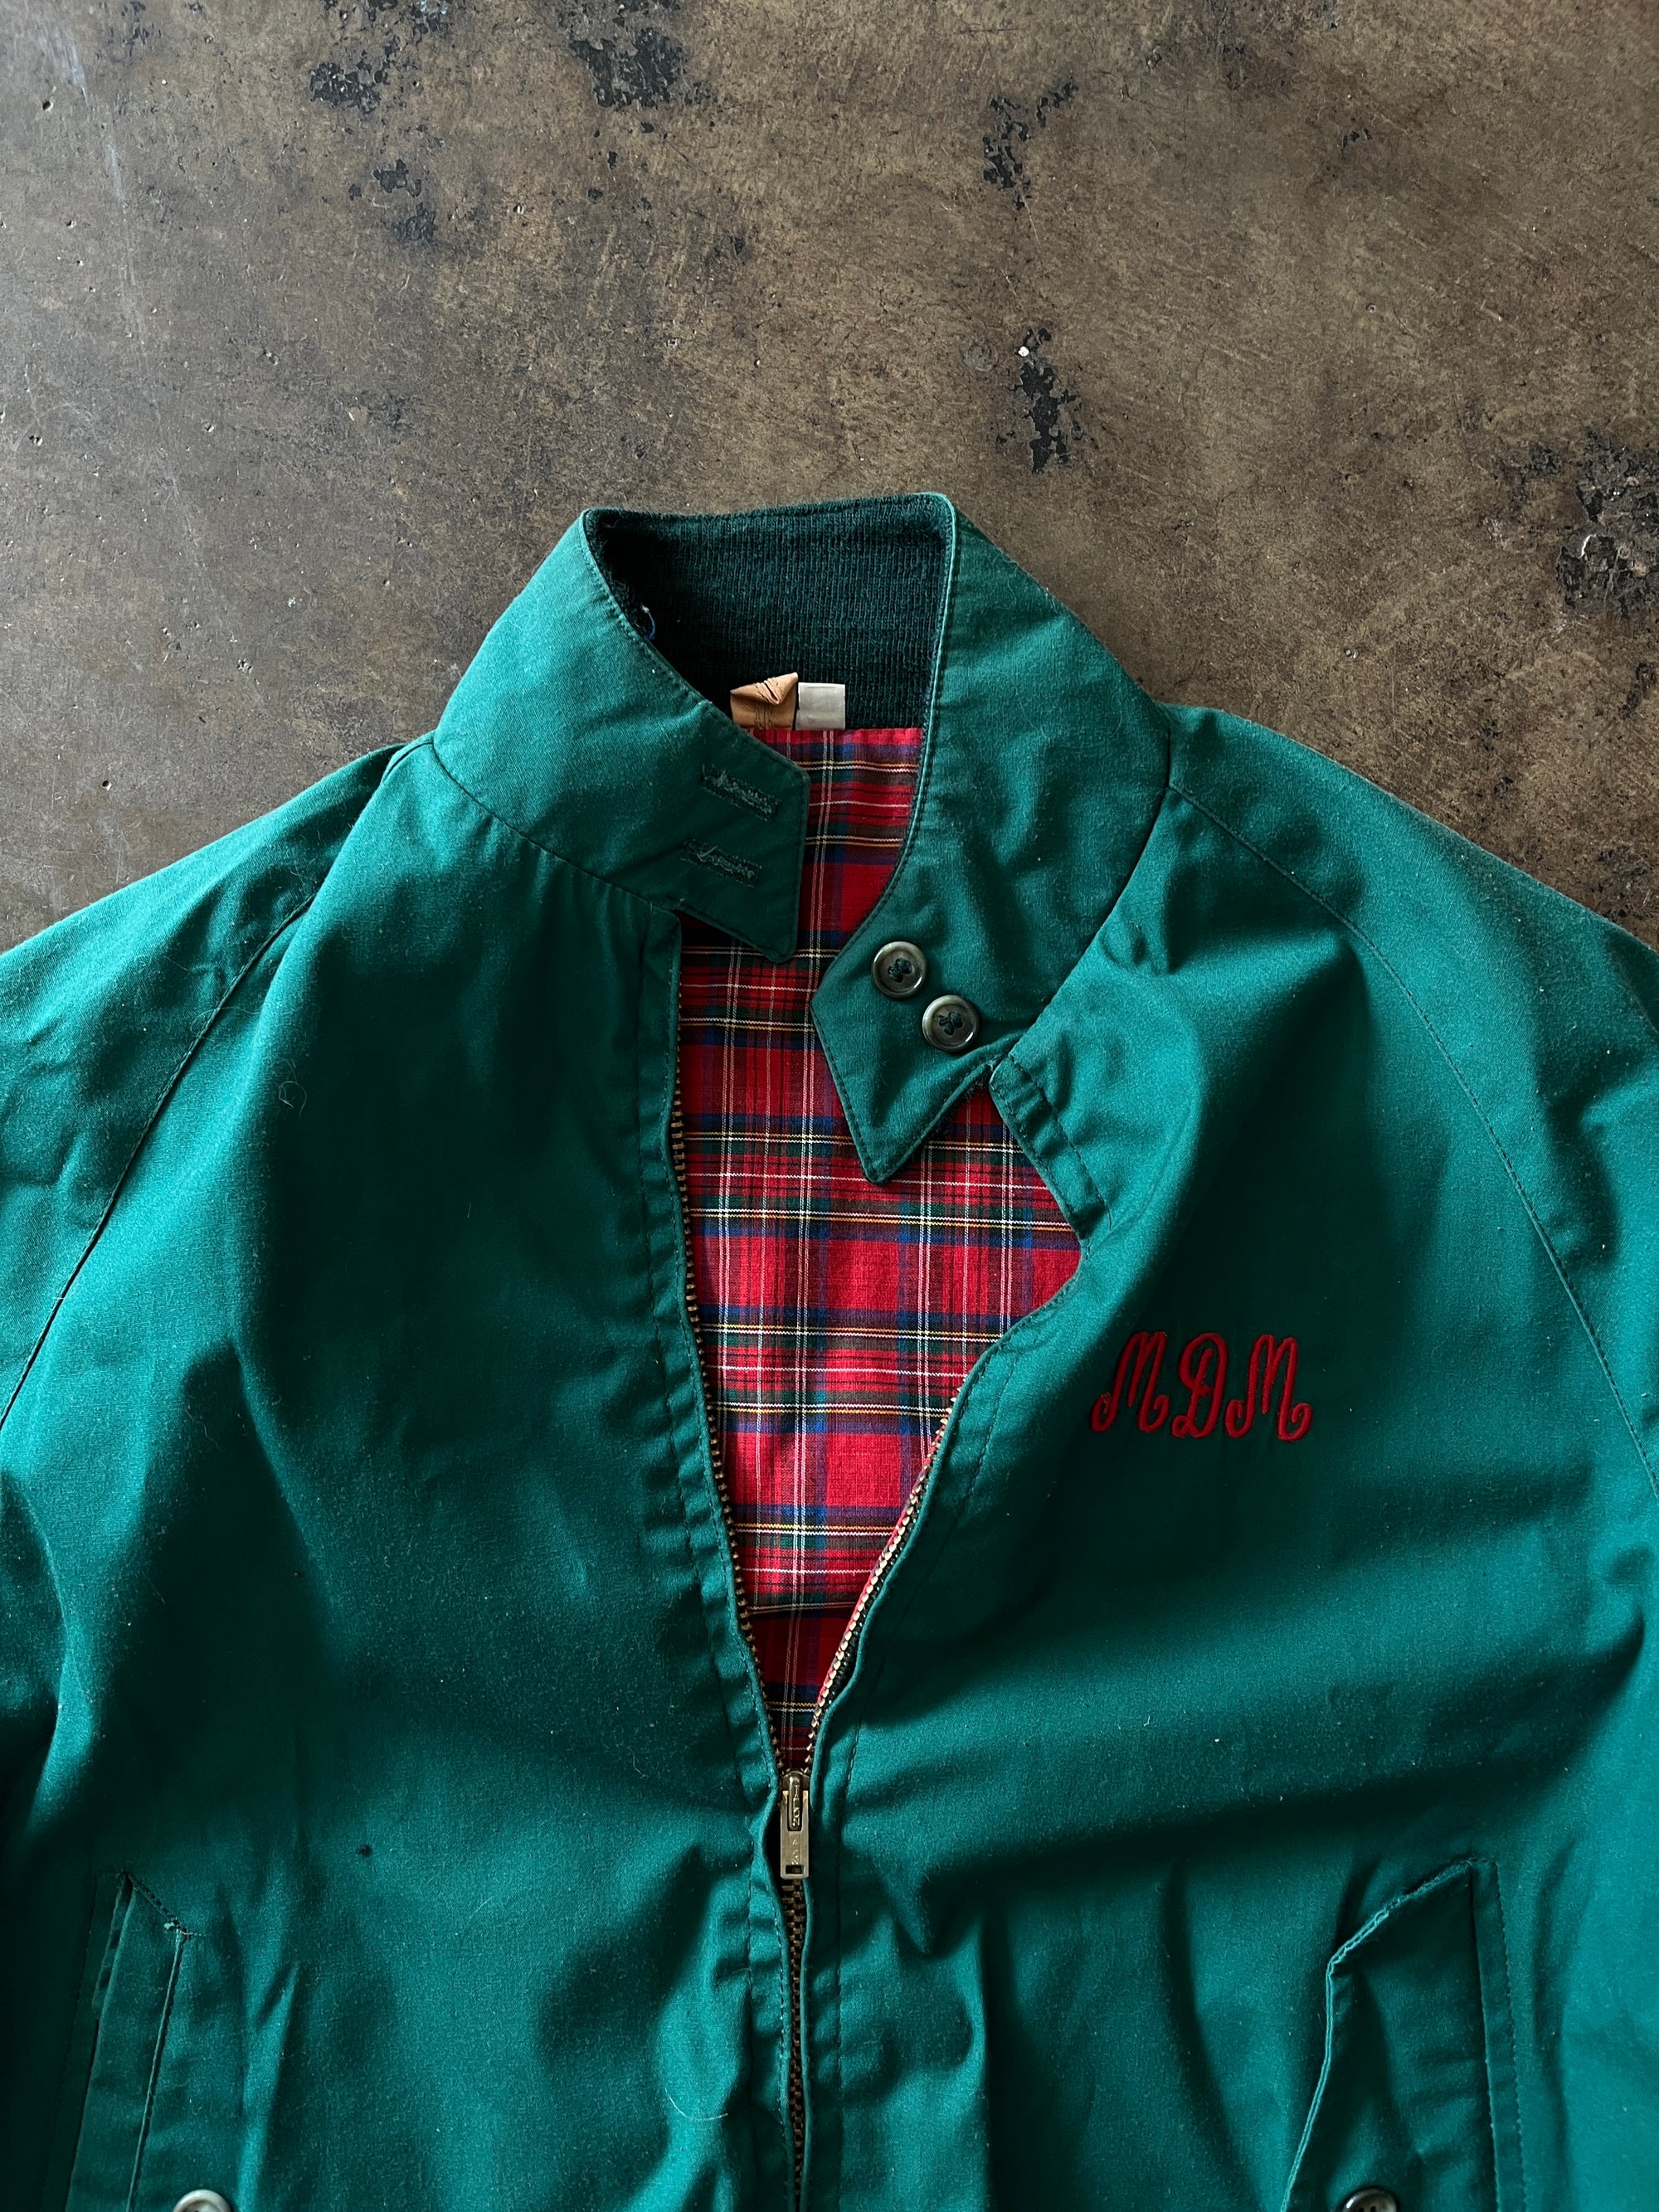 "MDM" Plaid Lined Green Club Jacket